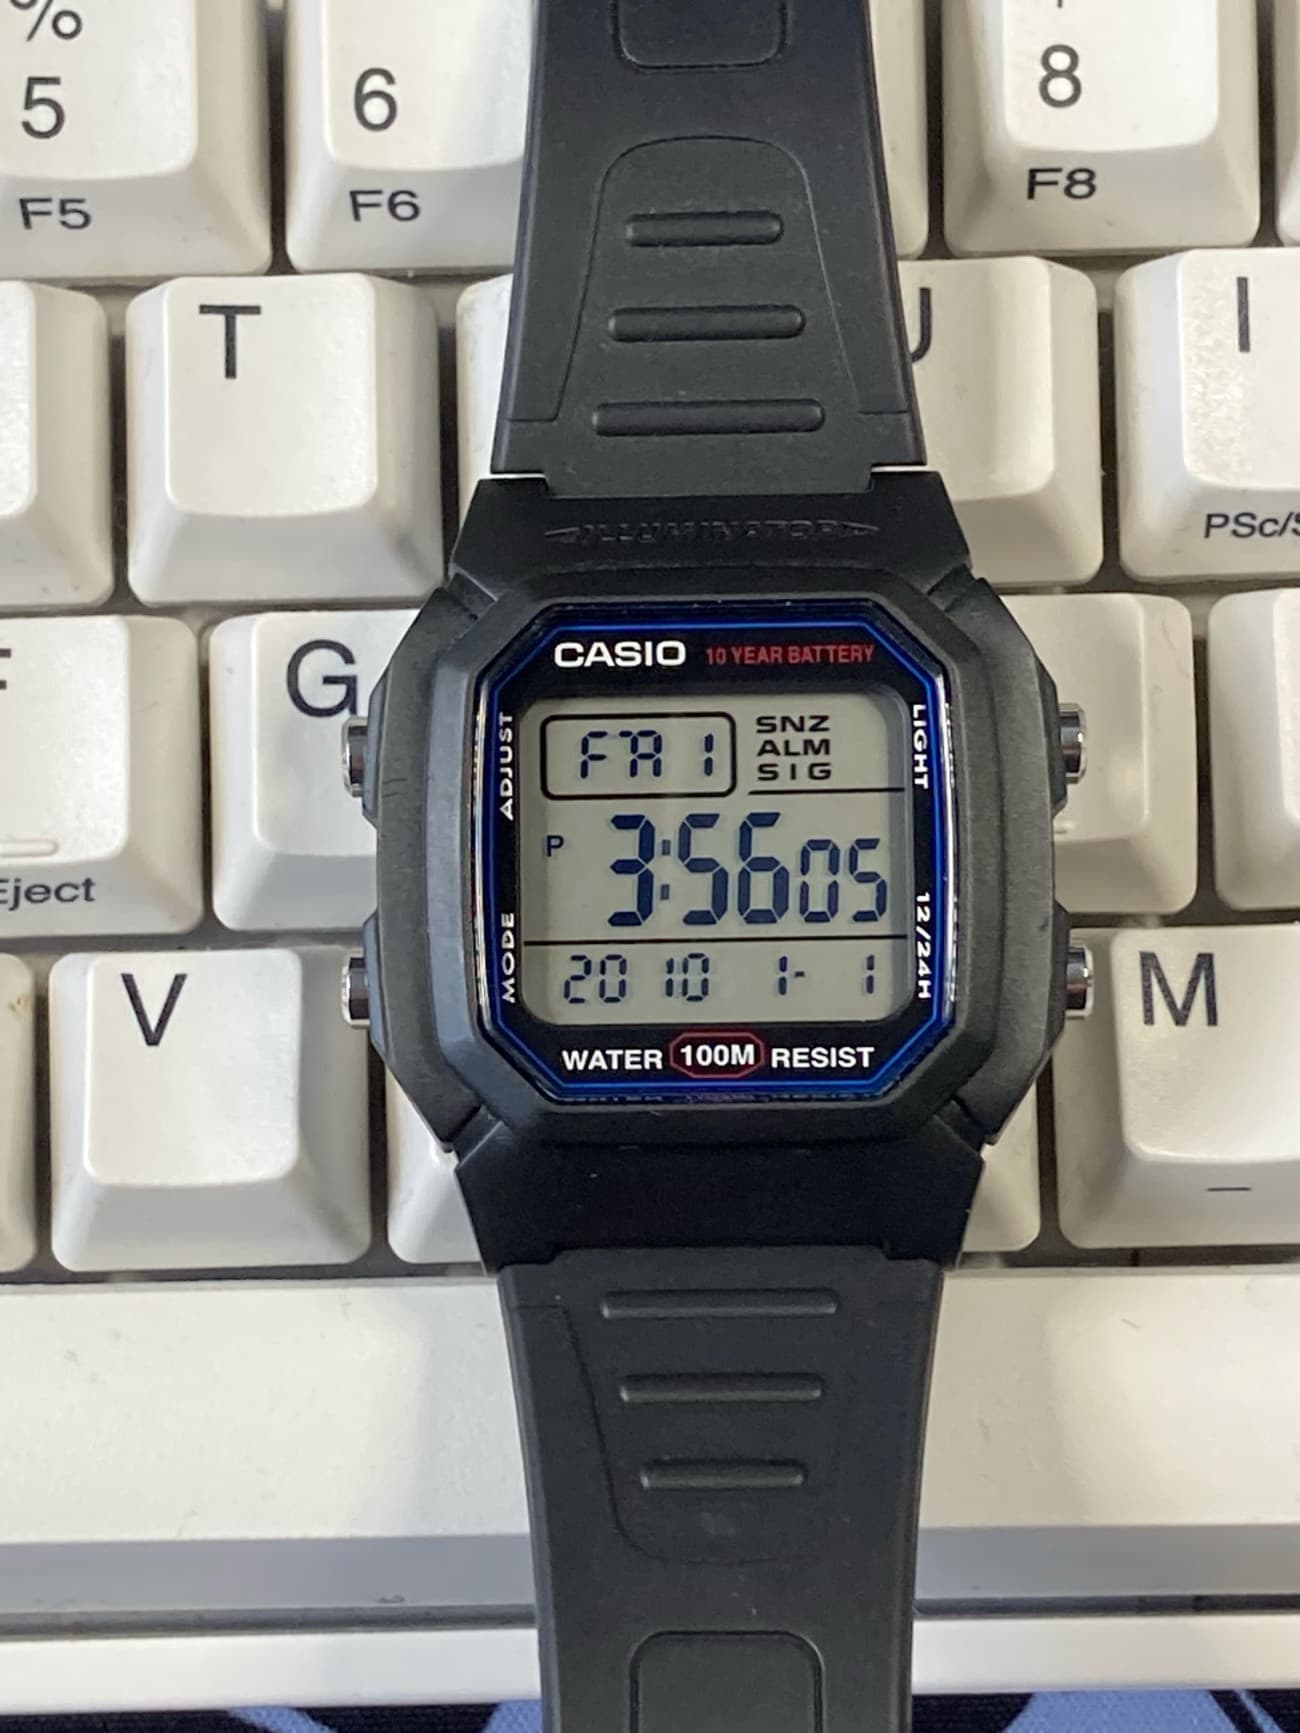 Casio W-800H: Reloj Casio deportivo perfecto para viajar y con 100M de resistencia al agua - Características y diseño 